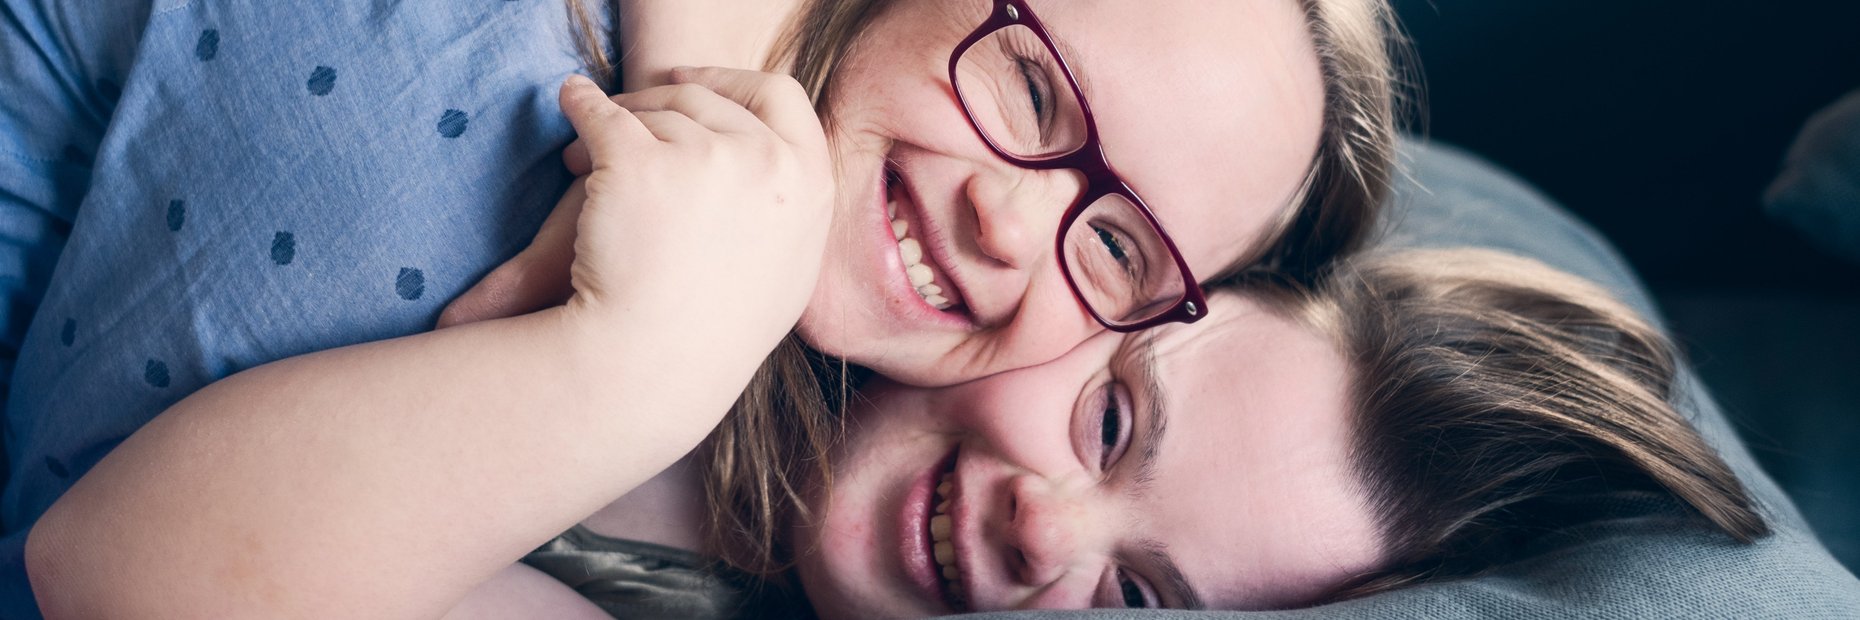 Zwei Mitbewohnerinnen mit Downsyndrom einer inklusiven WG liegen freundschaftlich umschlungen auf der Couch und kuscheln